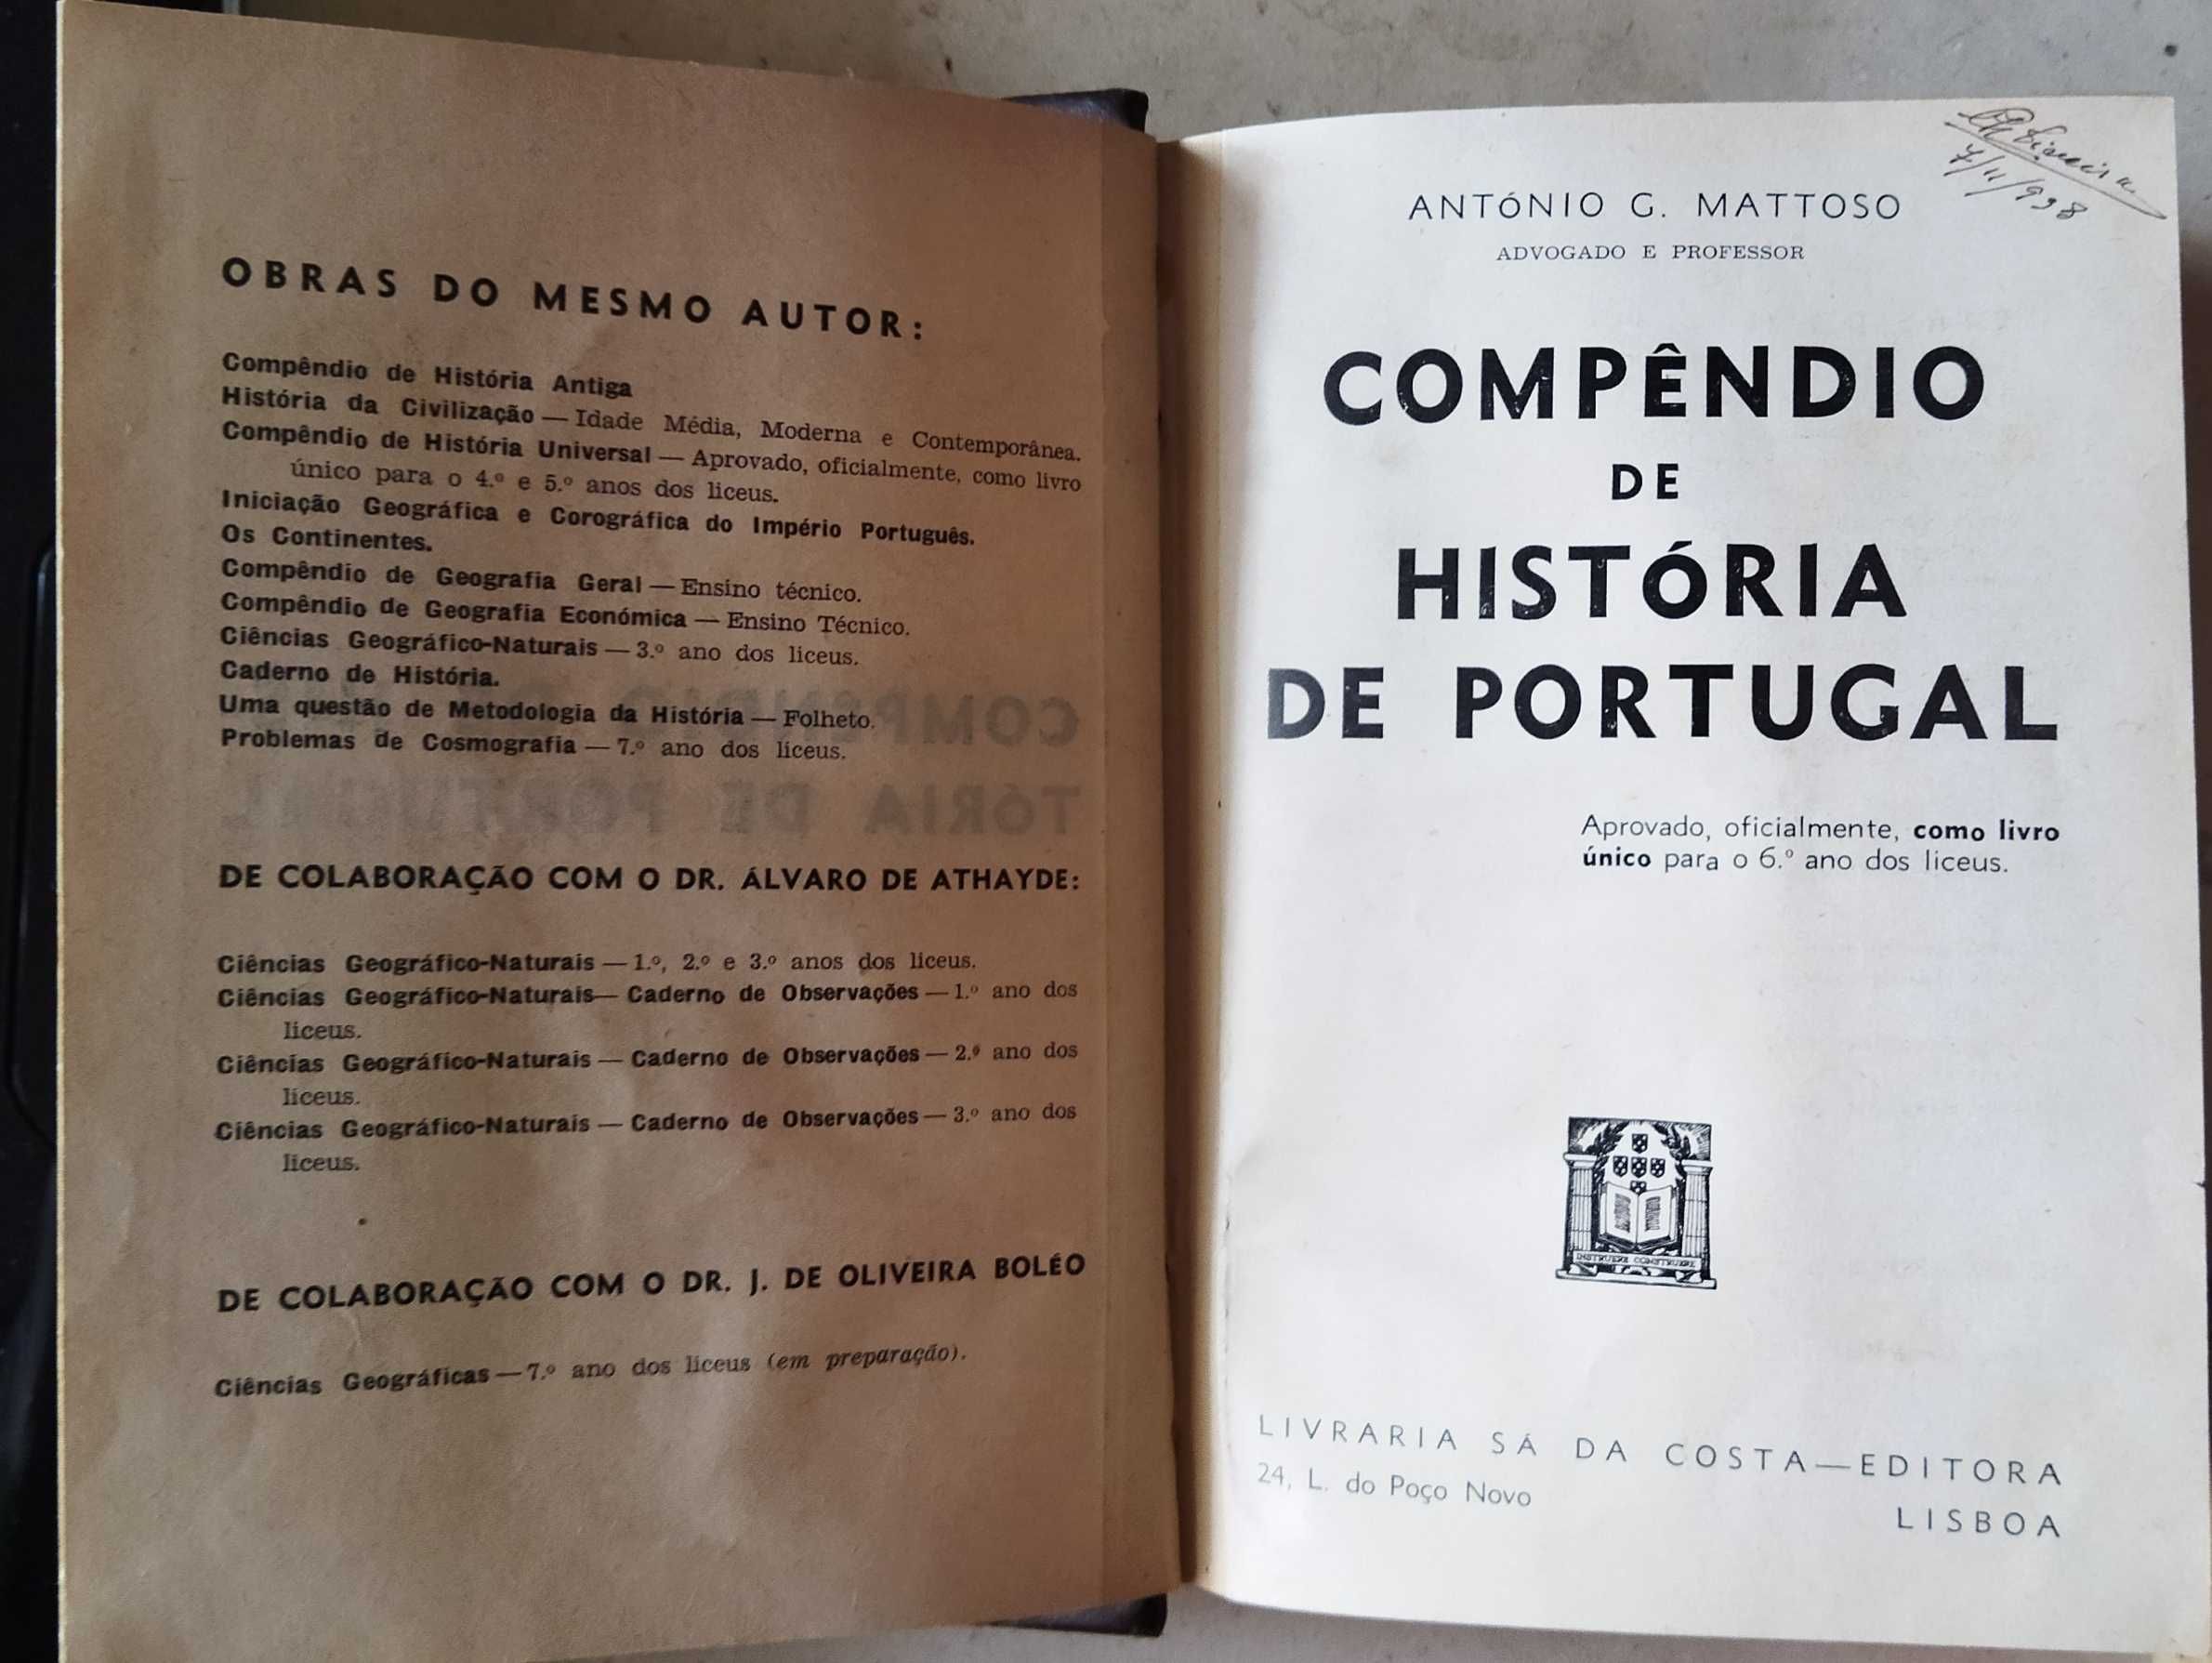 Compêndio de História de Portugal, professor António Matoso